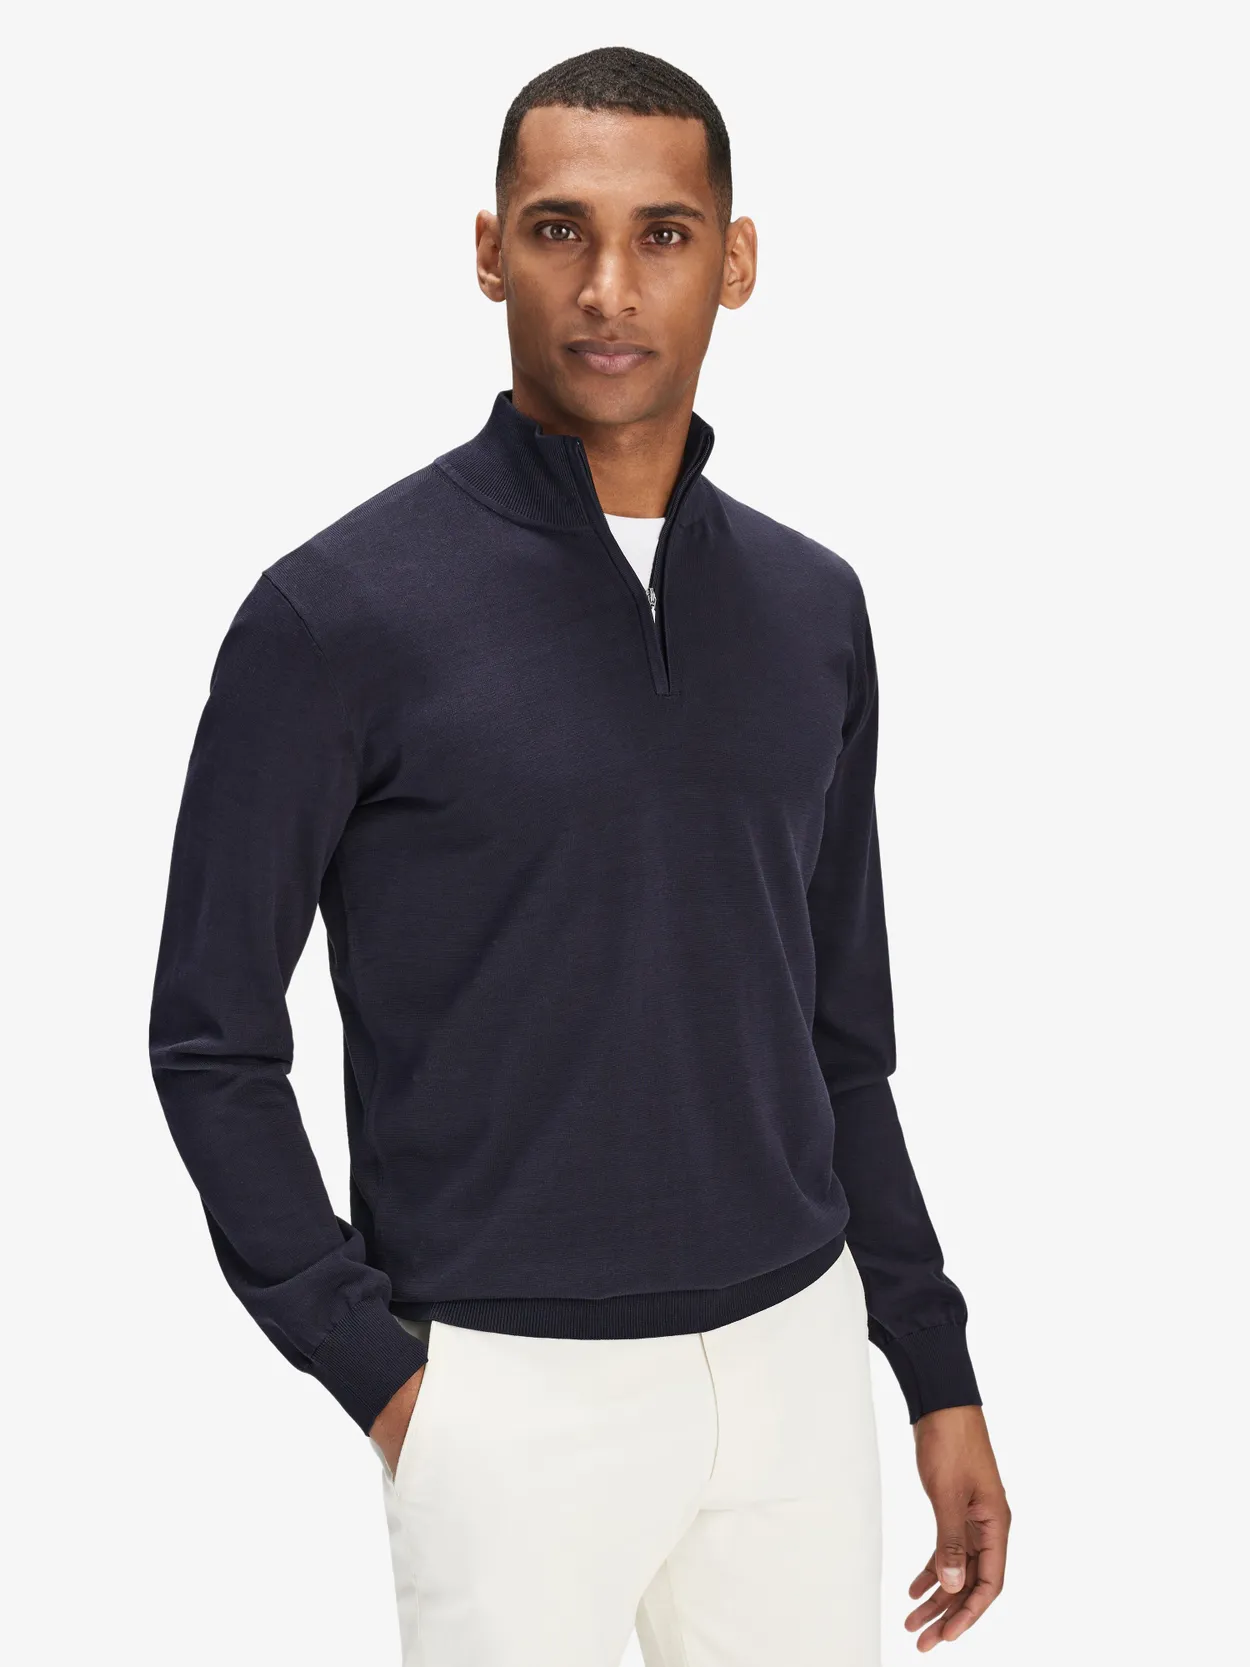 Navy Blue Silk Zipper Sweater